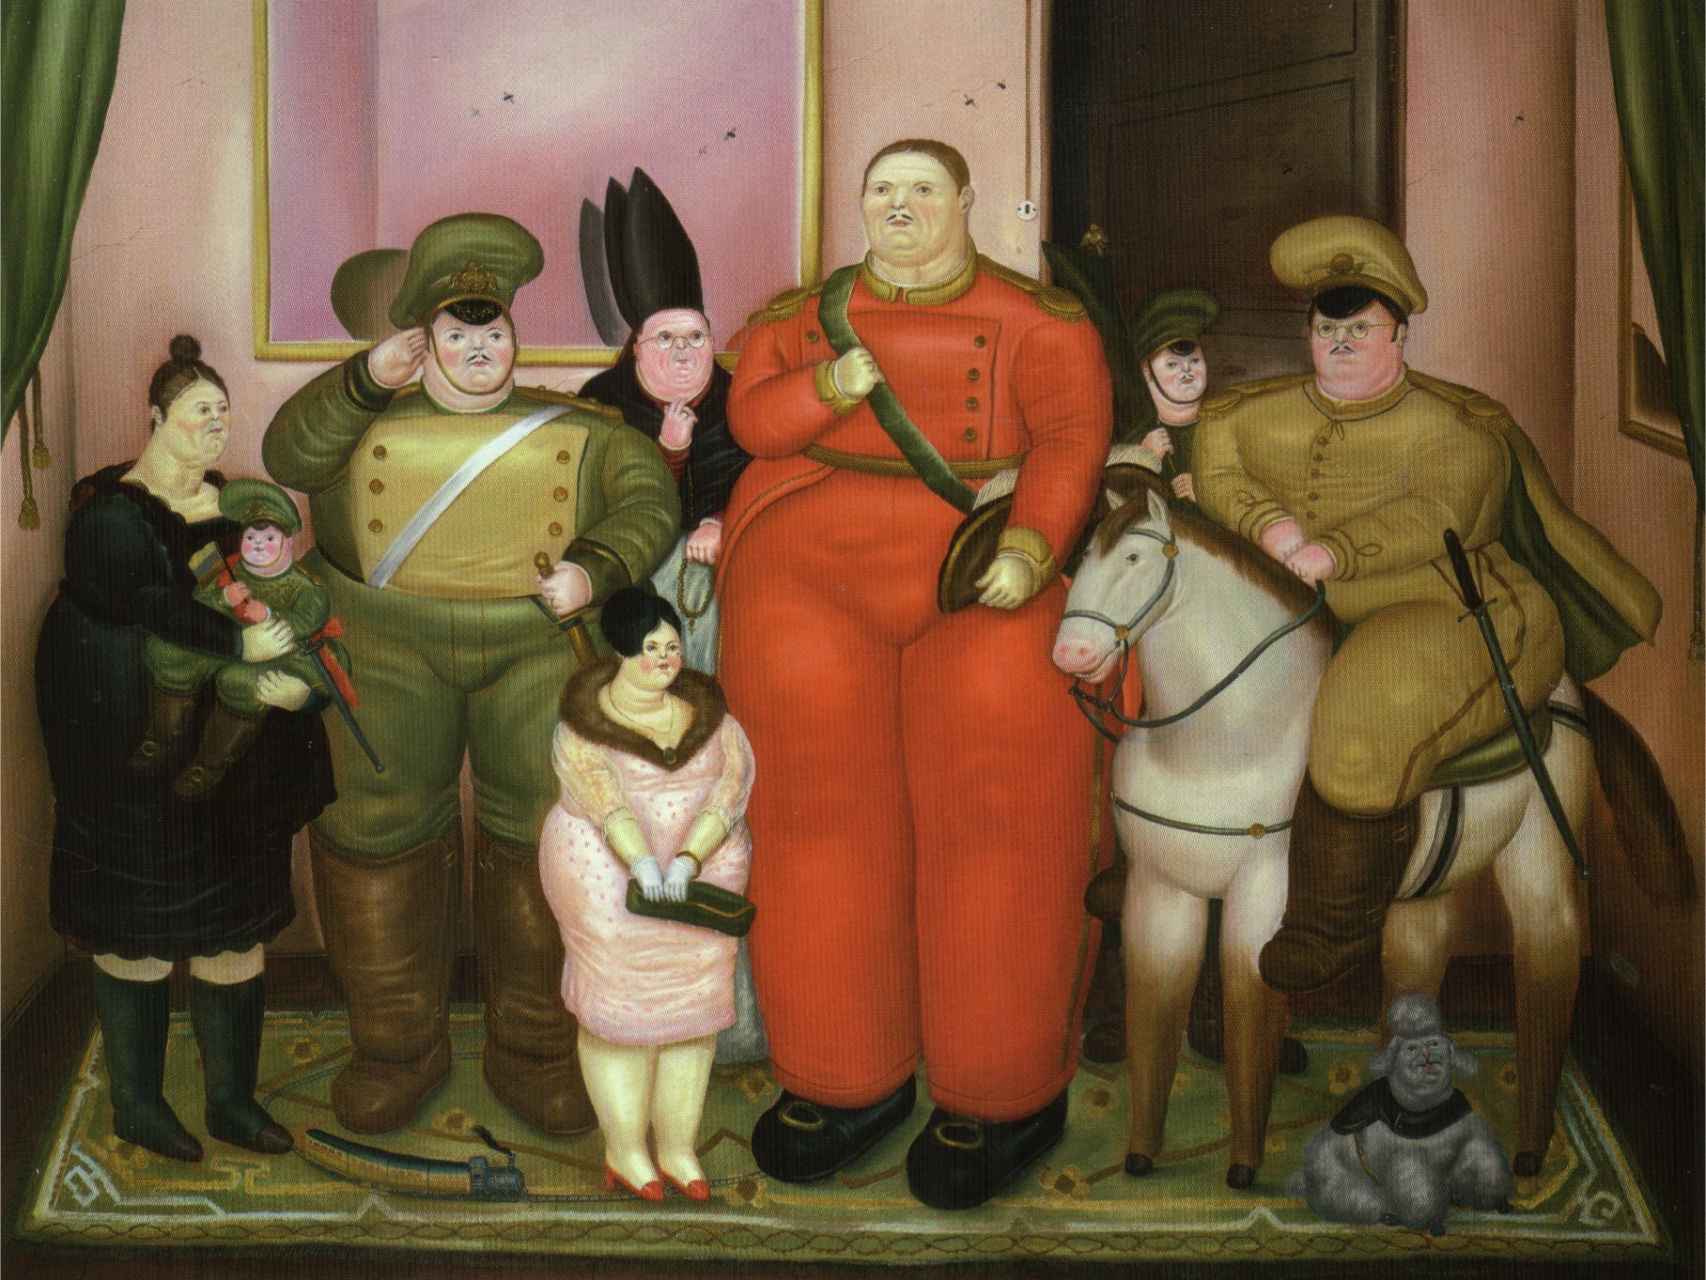 Retrato oficial de la Junta Militar por Fernando Botero.